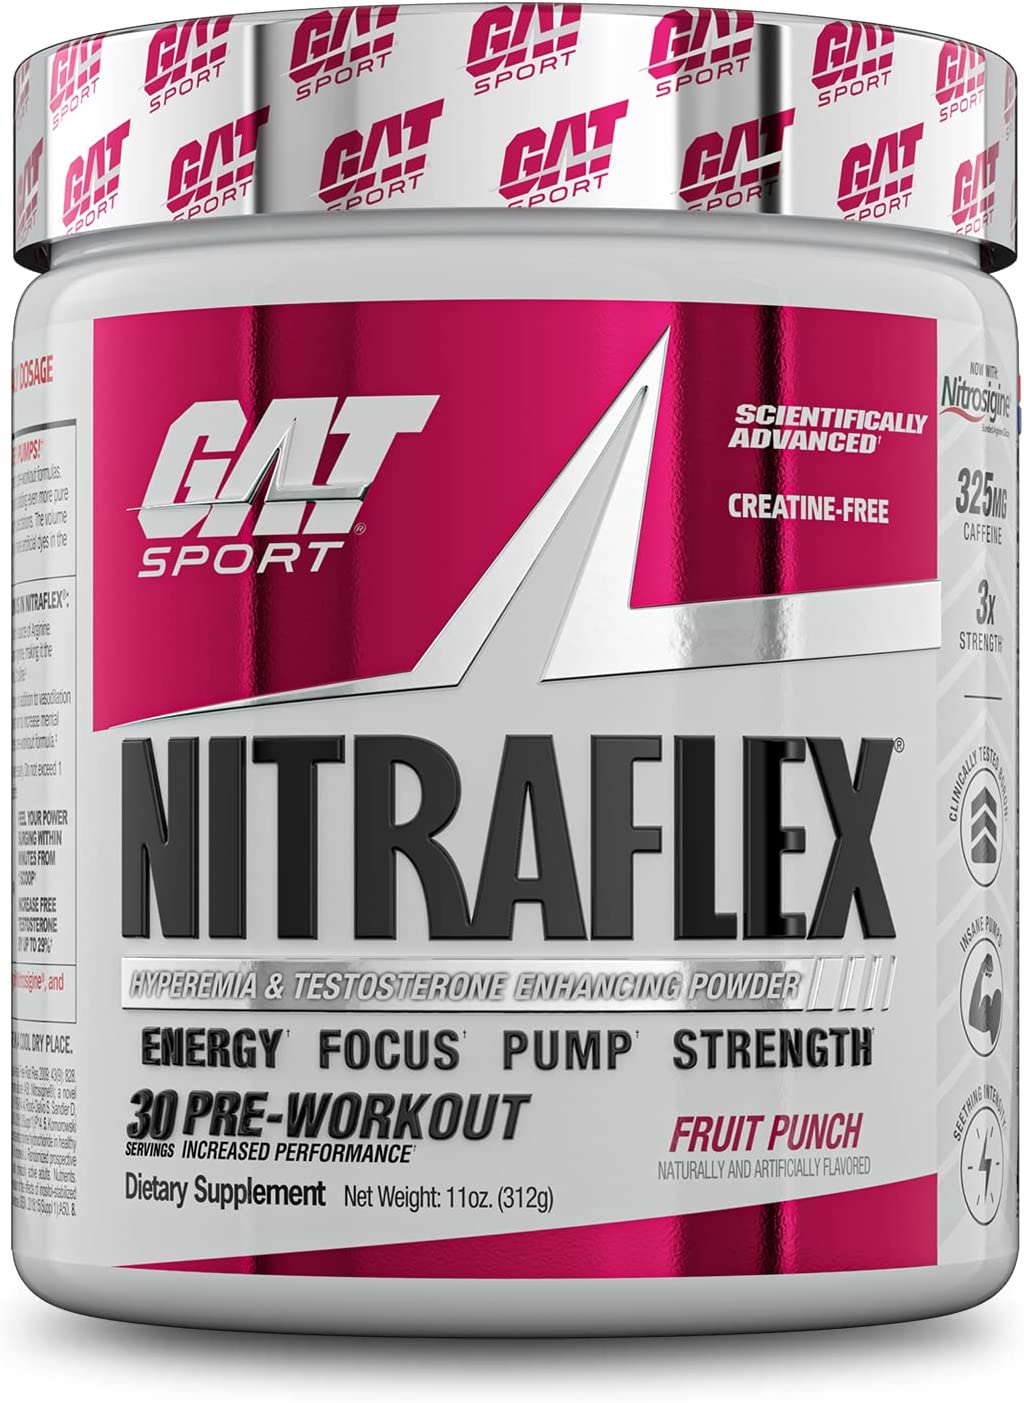 G.A.T Nitraflex - Advanced Pre-Workout!